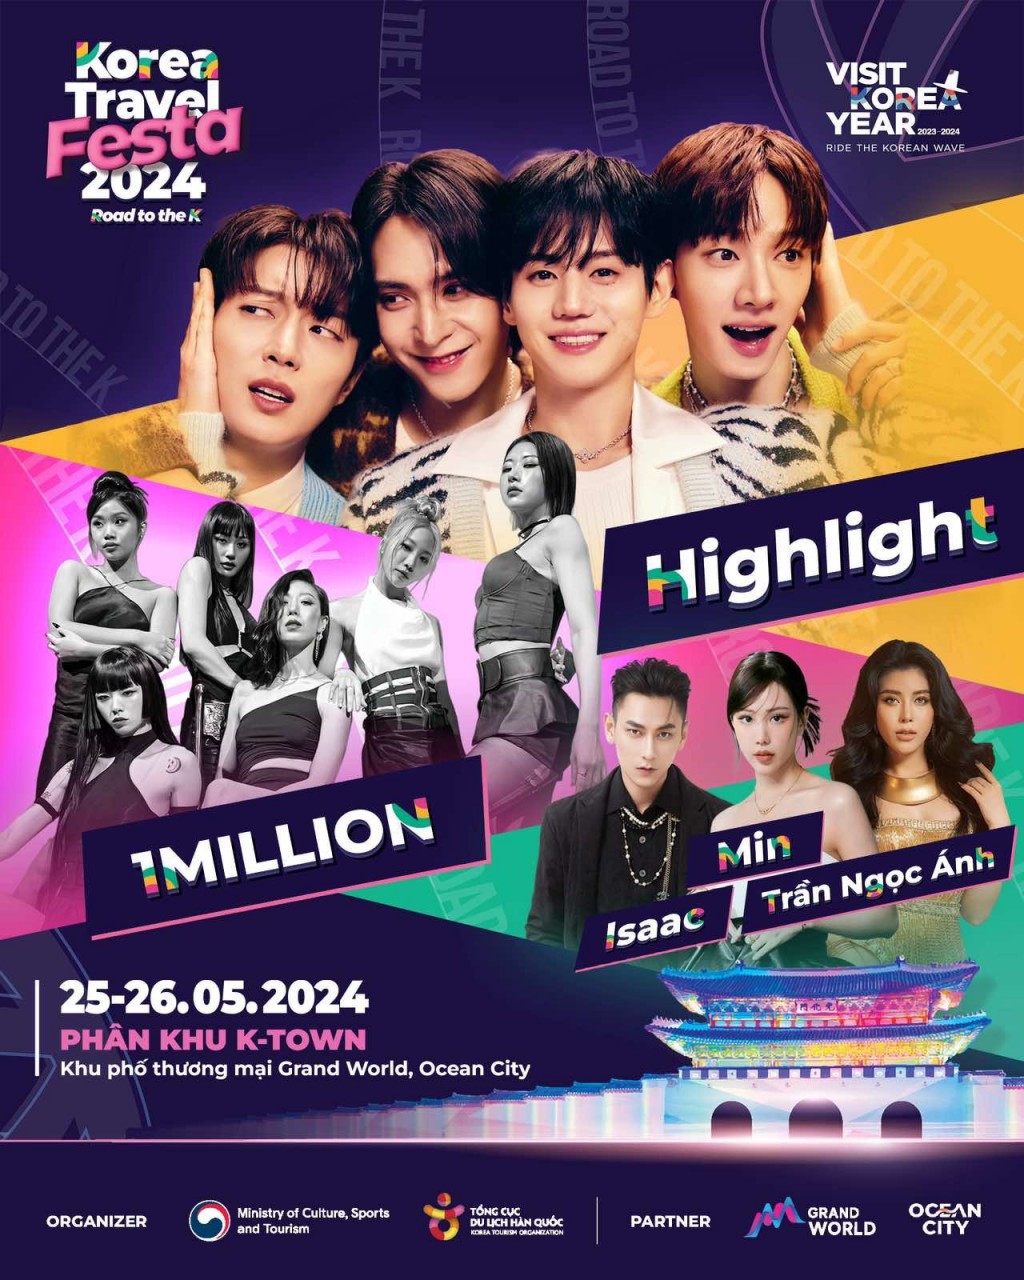 Nhóm nhạc Highlight cùng các nghệ sĩ nổi tiếng sẽ đem tới những bản hit đình đám, hứa hẹn làm bùng nổ sân khấu Korea Travel Festa